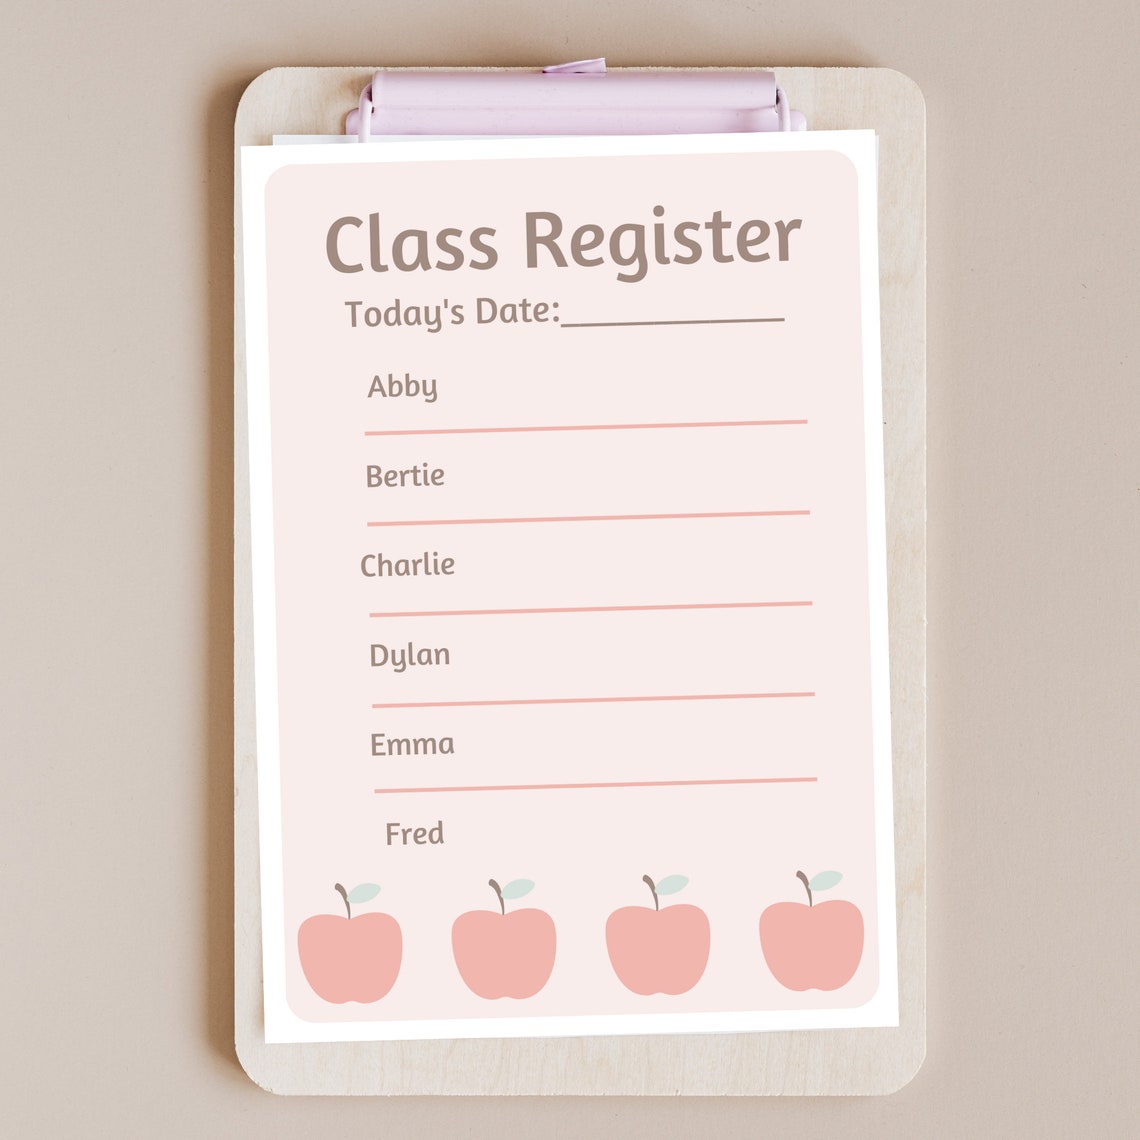 print-and-play-pretend-teacher-paperwork-class-register-lanyard-badge